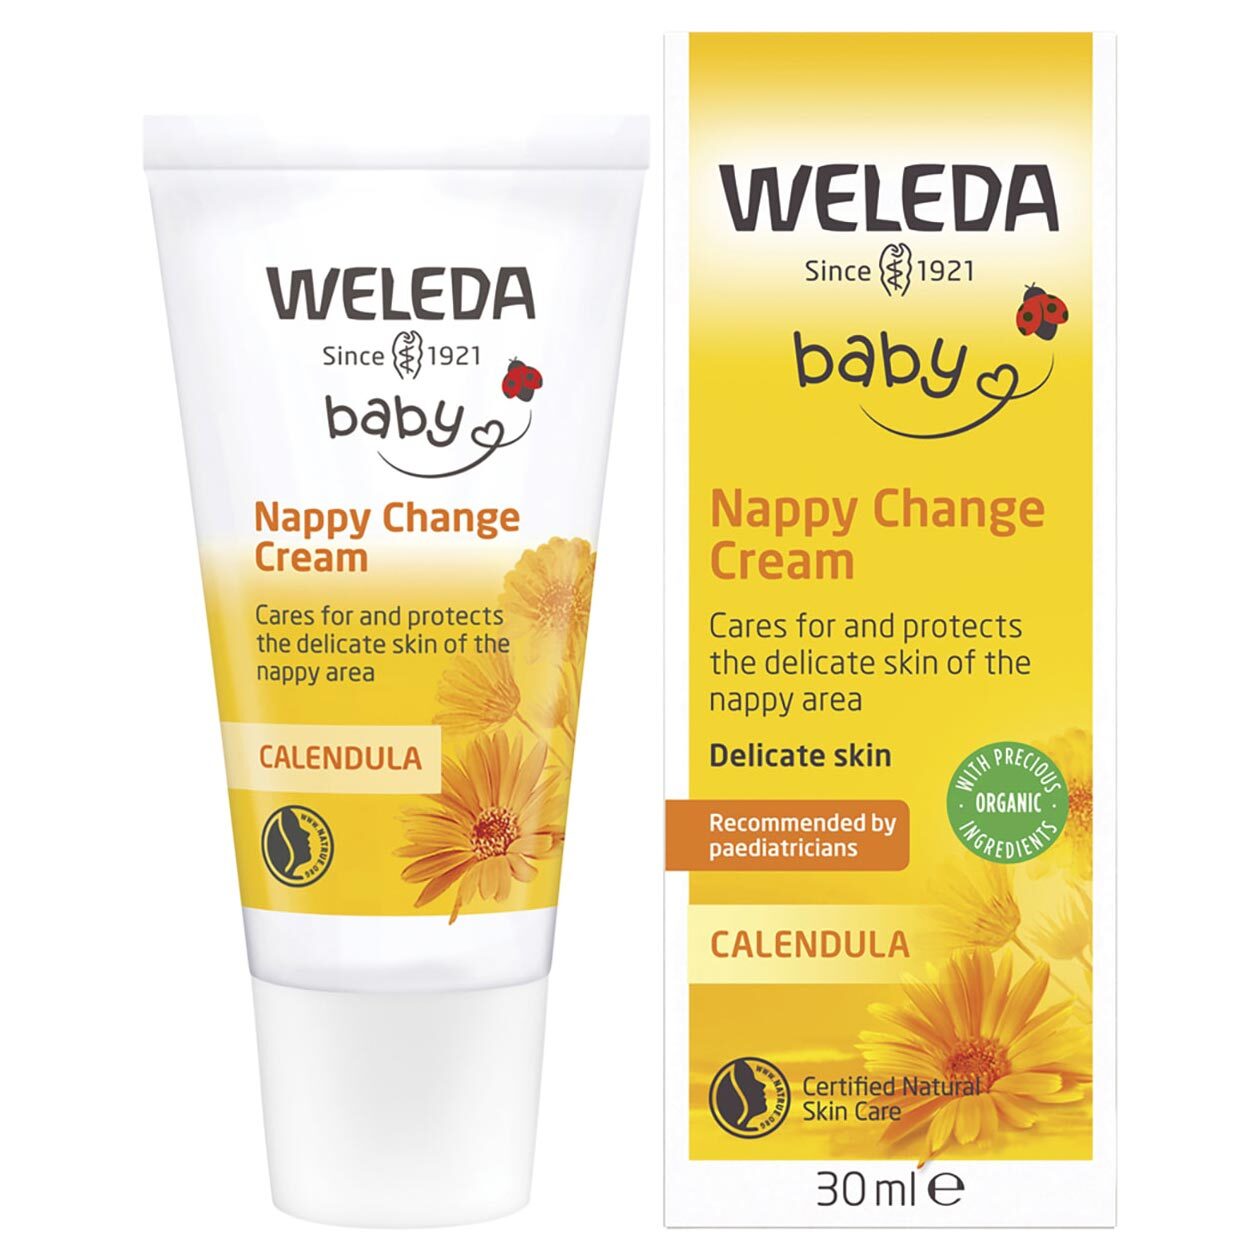 Weleda Calendula Baby Nappy Change Cream 75ml